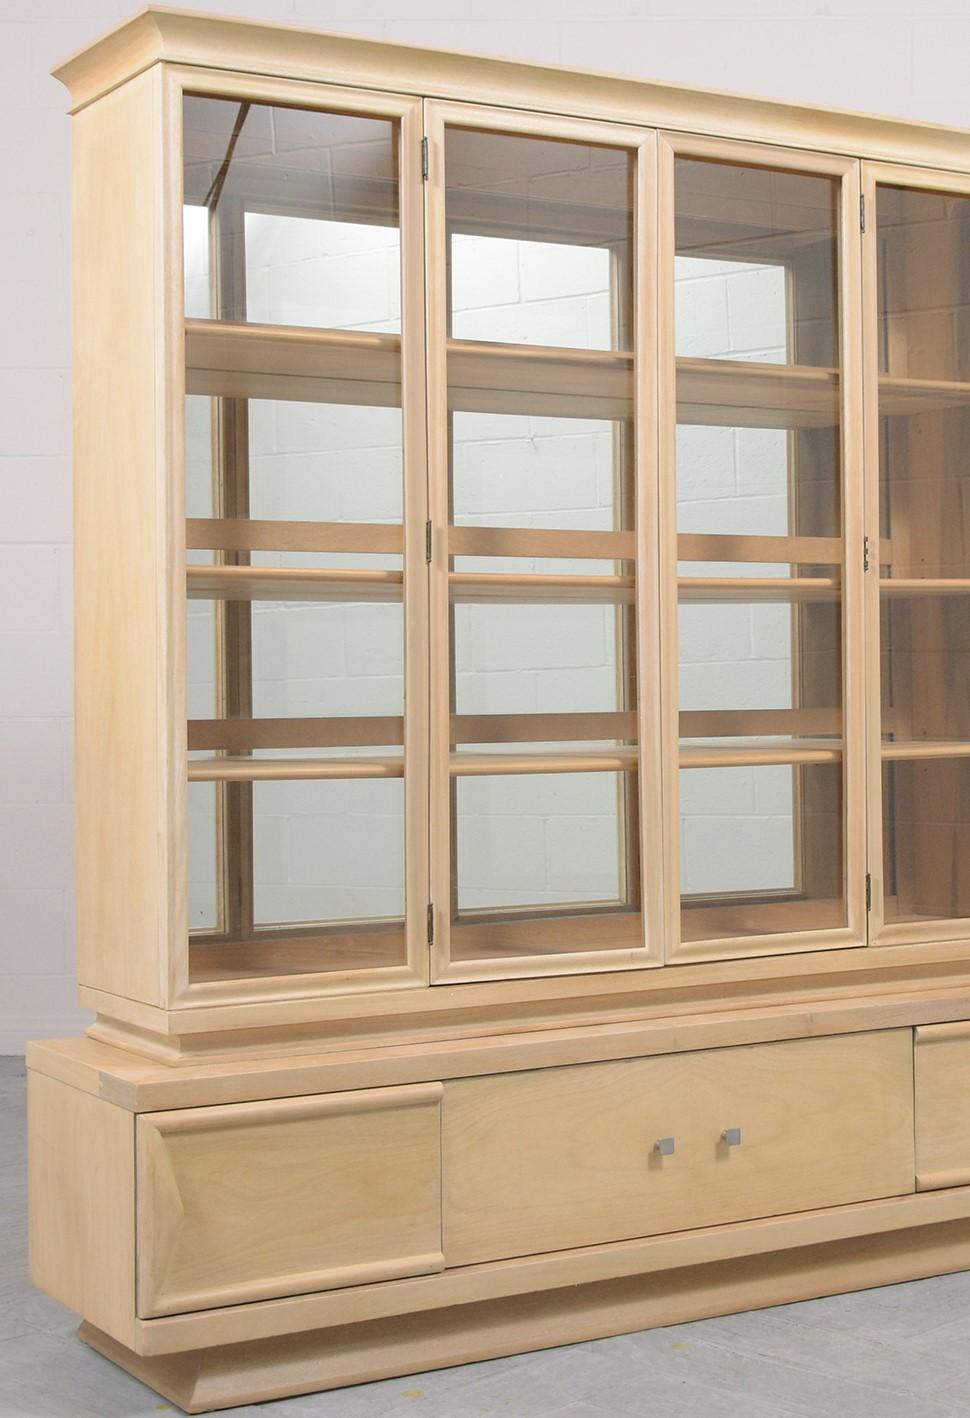 1960s Mid-Century Ash Wood Cabinet with White-Washed Finish & Glass Doors (Armoire en bois de frêne des années 60 avec finition blanchie et portes en verre) en vente 2